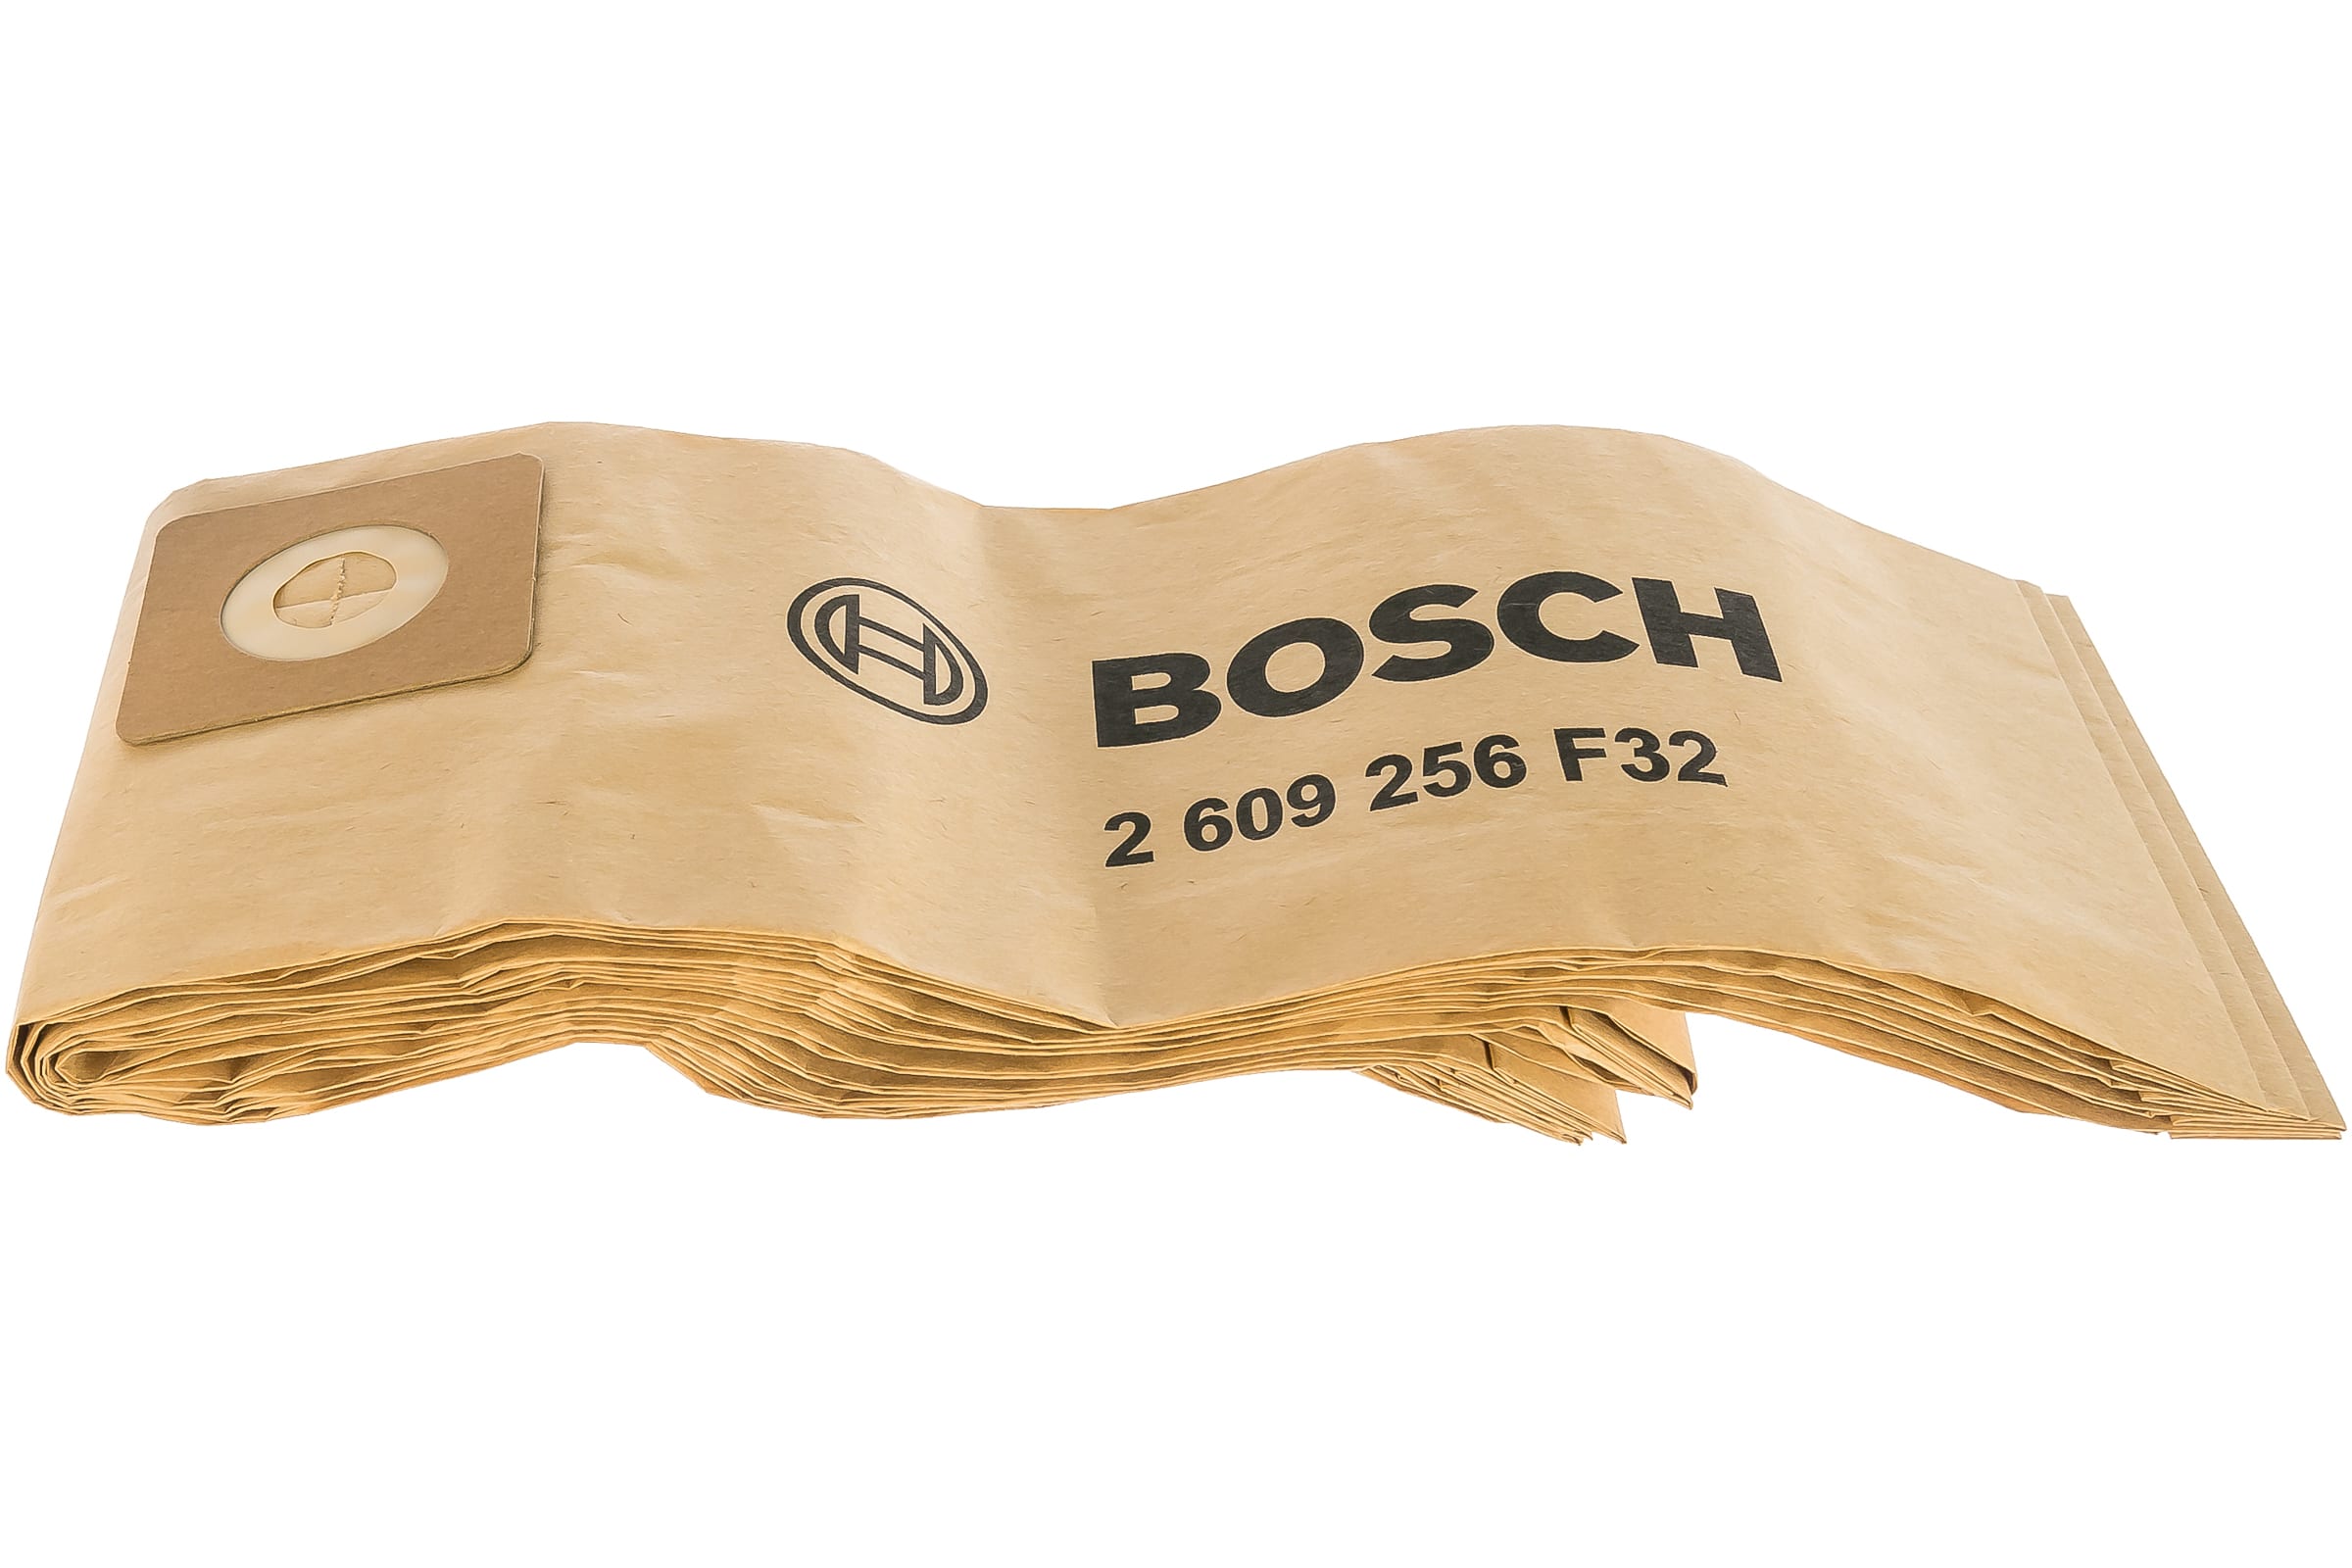 Мешки бумажные для VAC 15, 5 шт. Bosch 2.609.256.F32